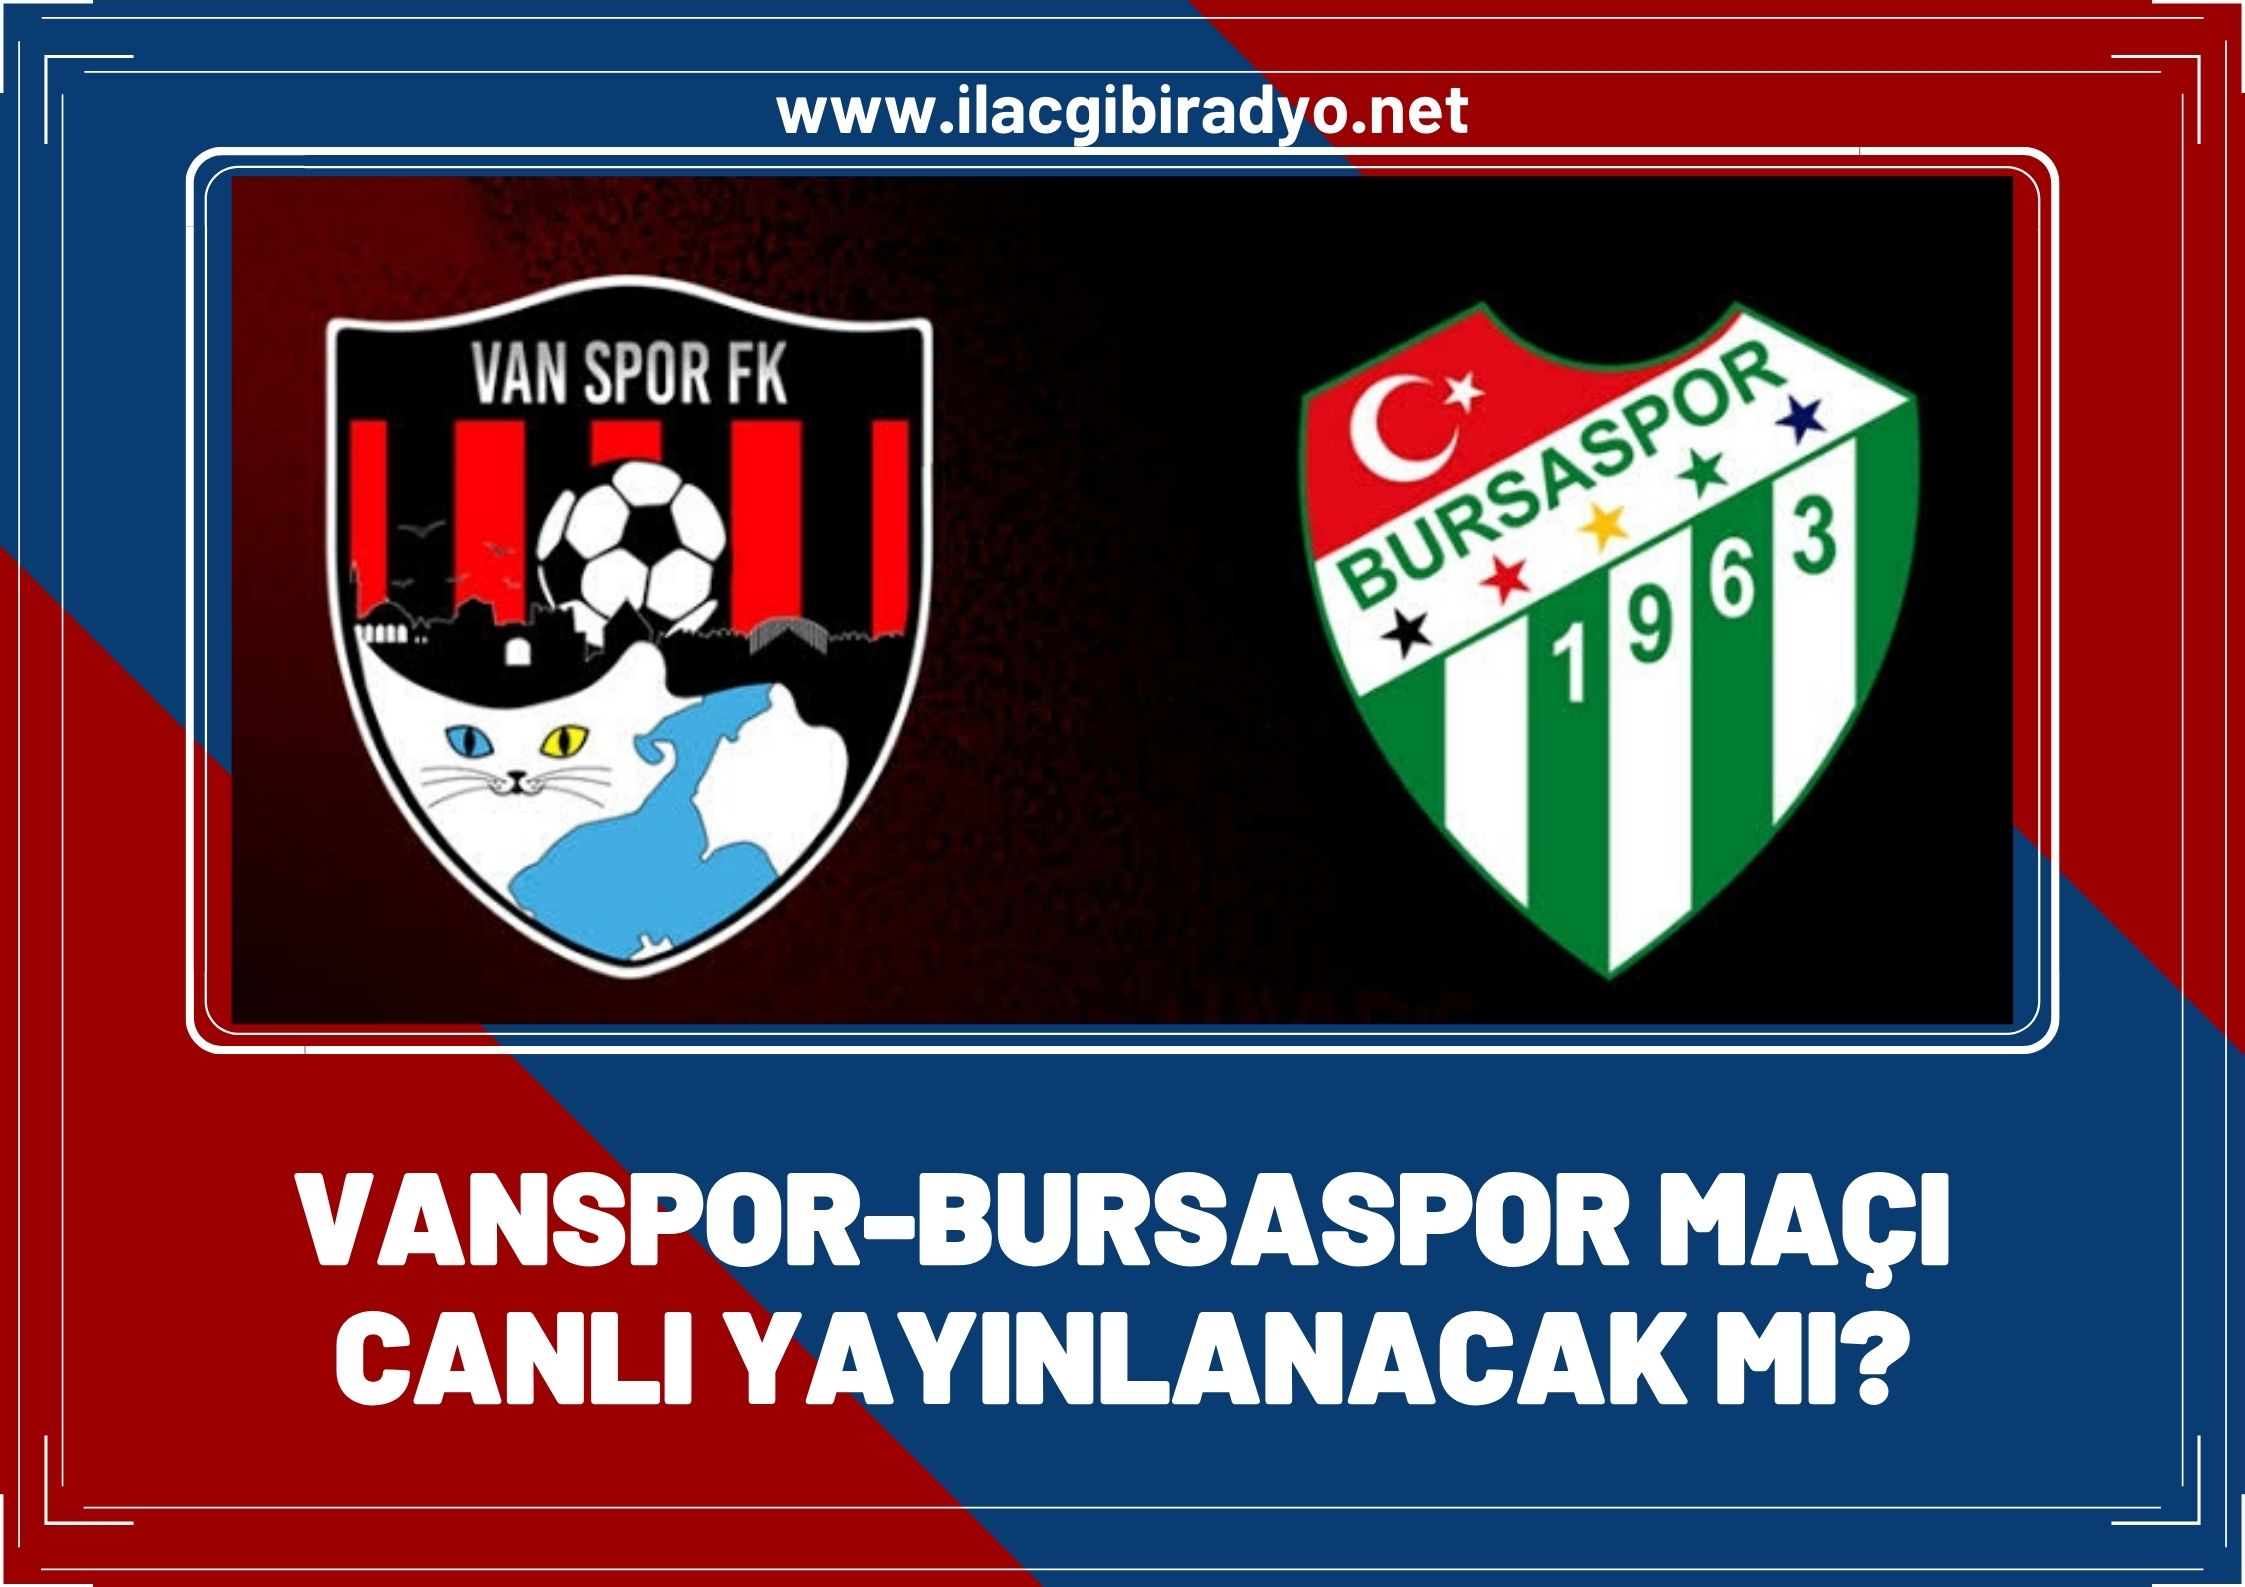 Vanspor - Bursaspor maçı canlı yayınlanacak mı?